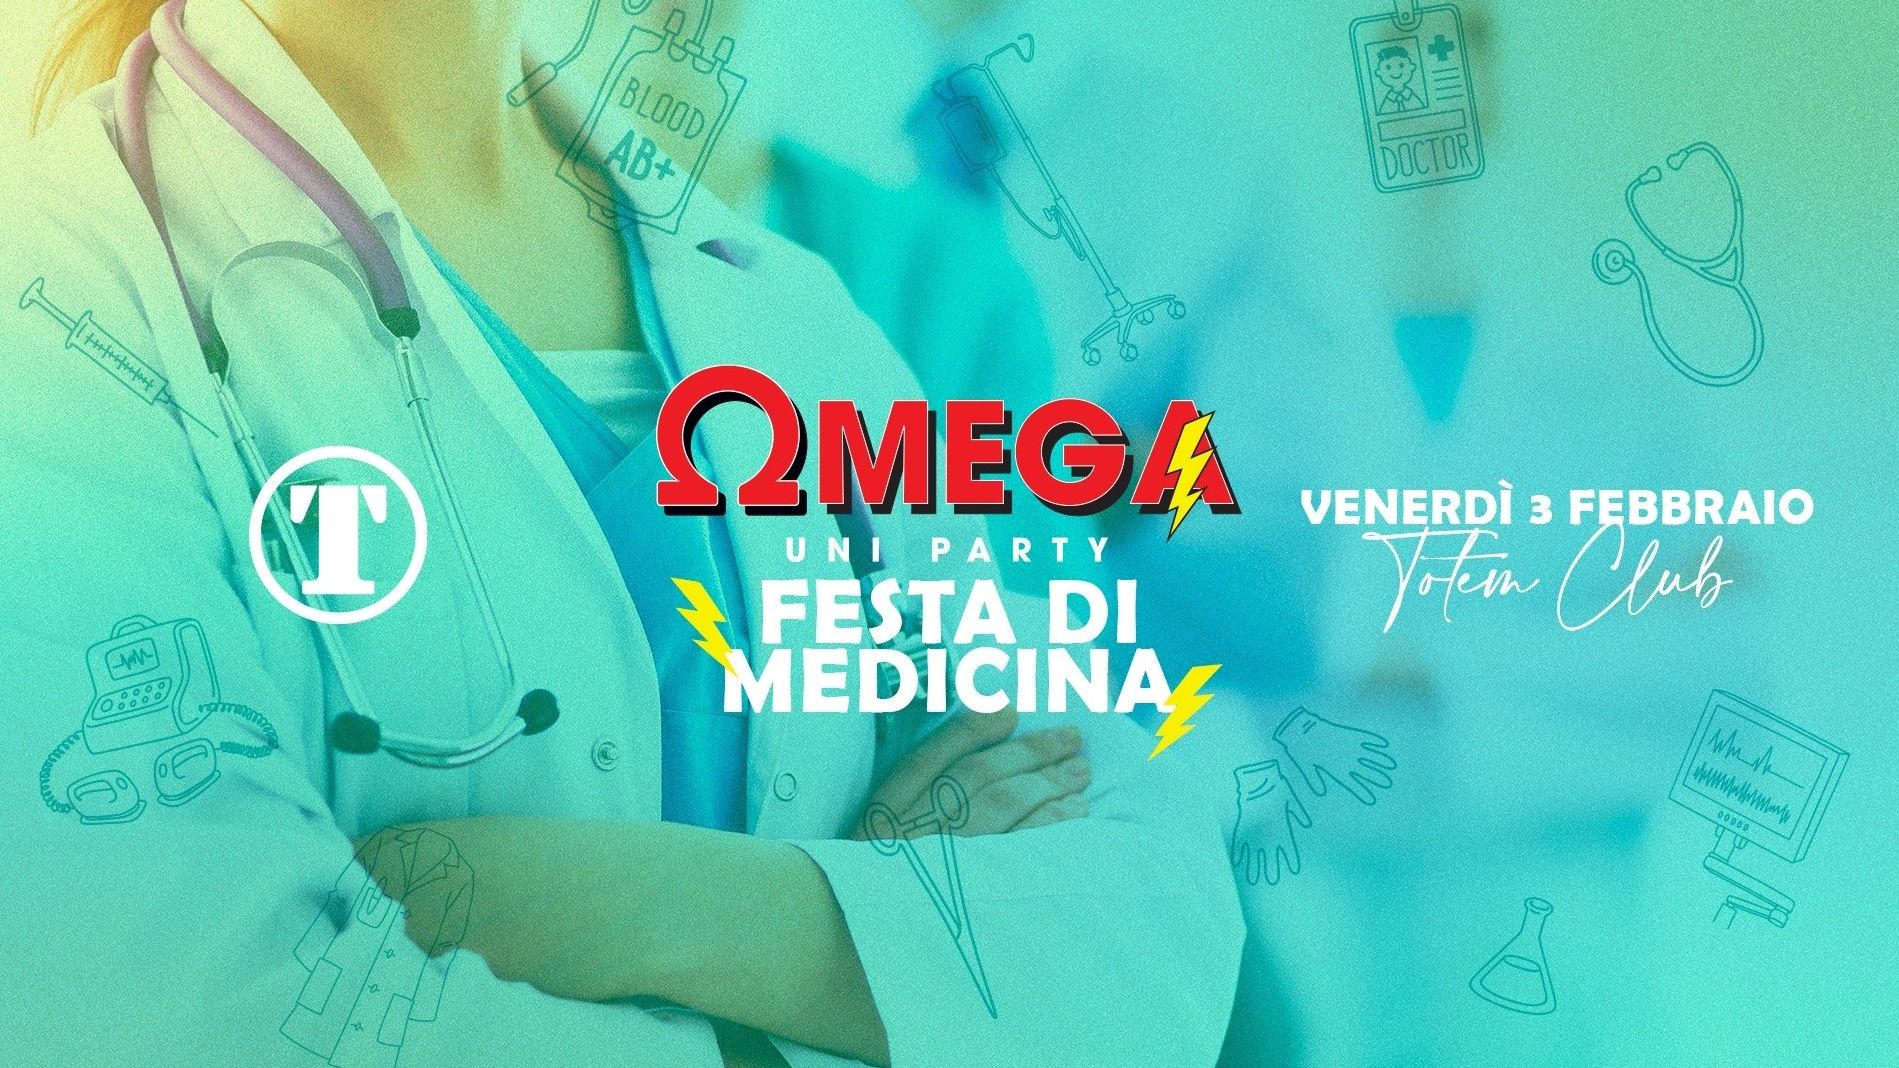 Omega Ω Uniparty - Festa di Medicina